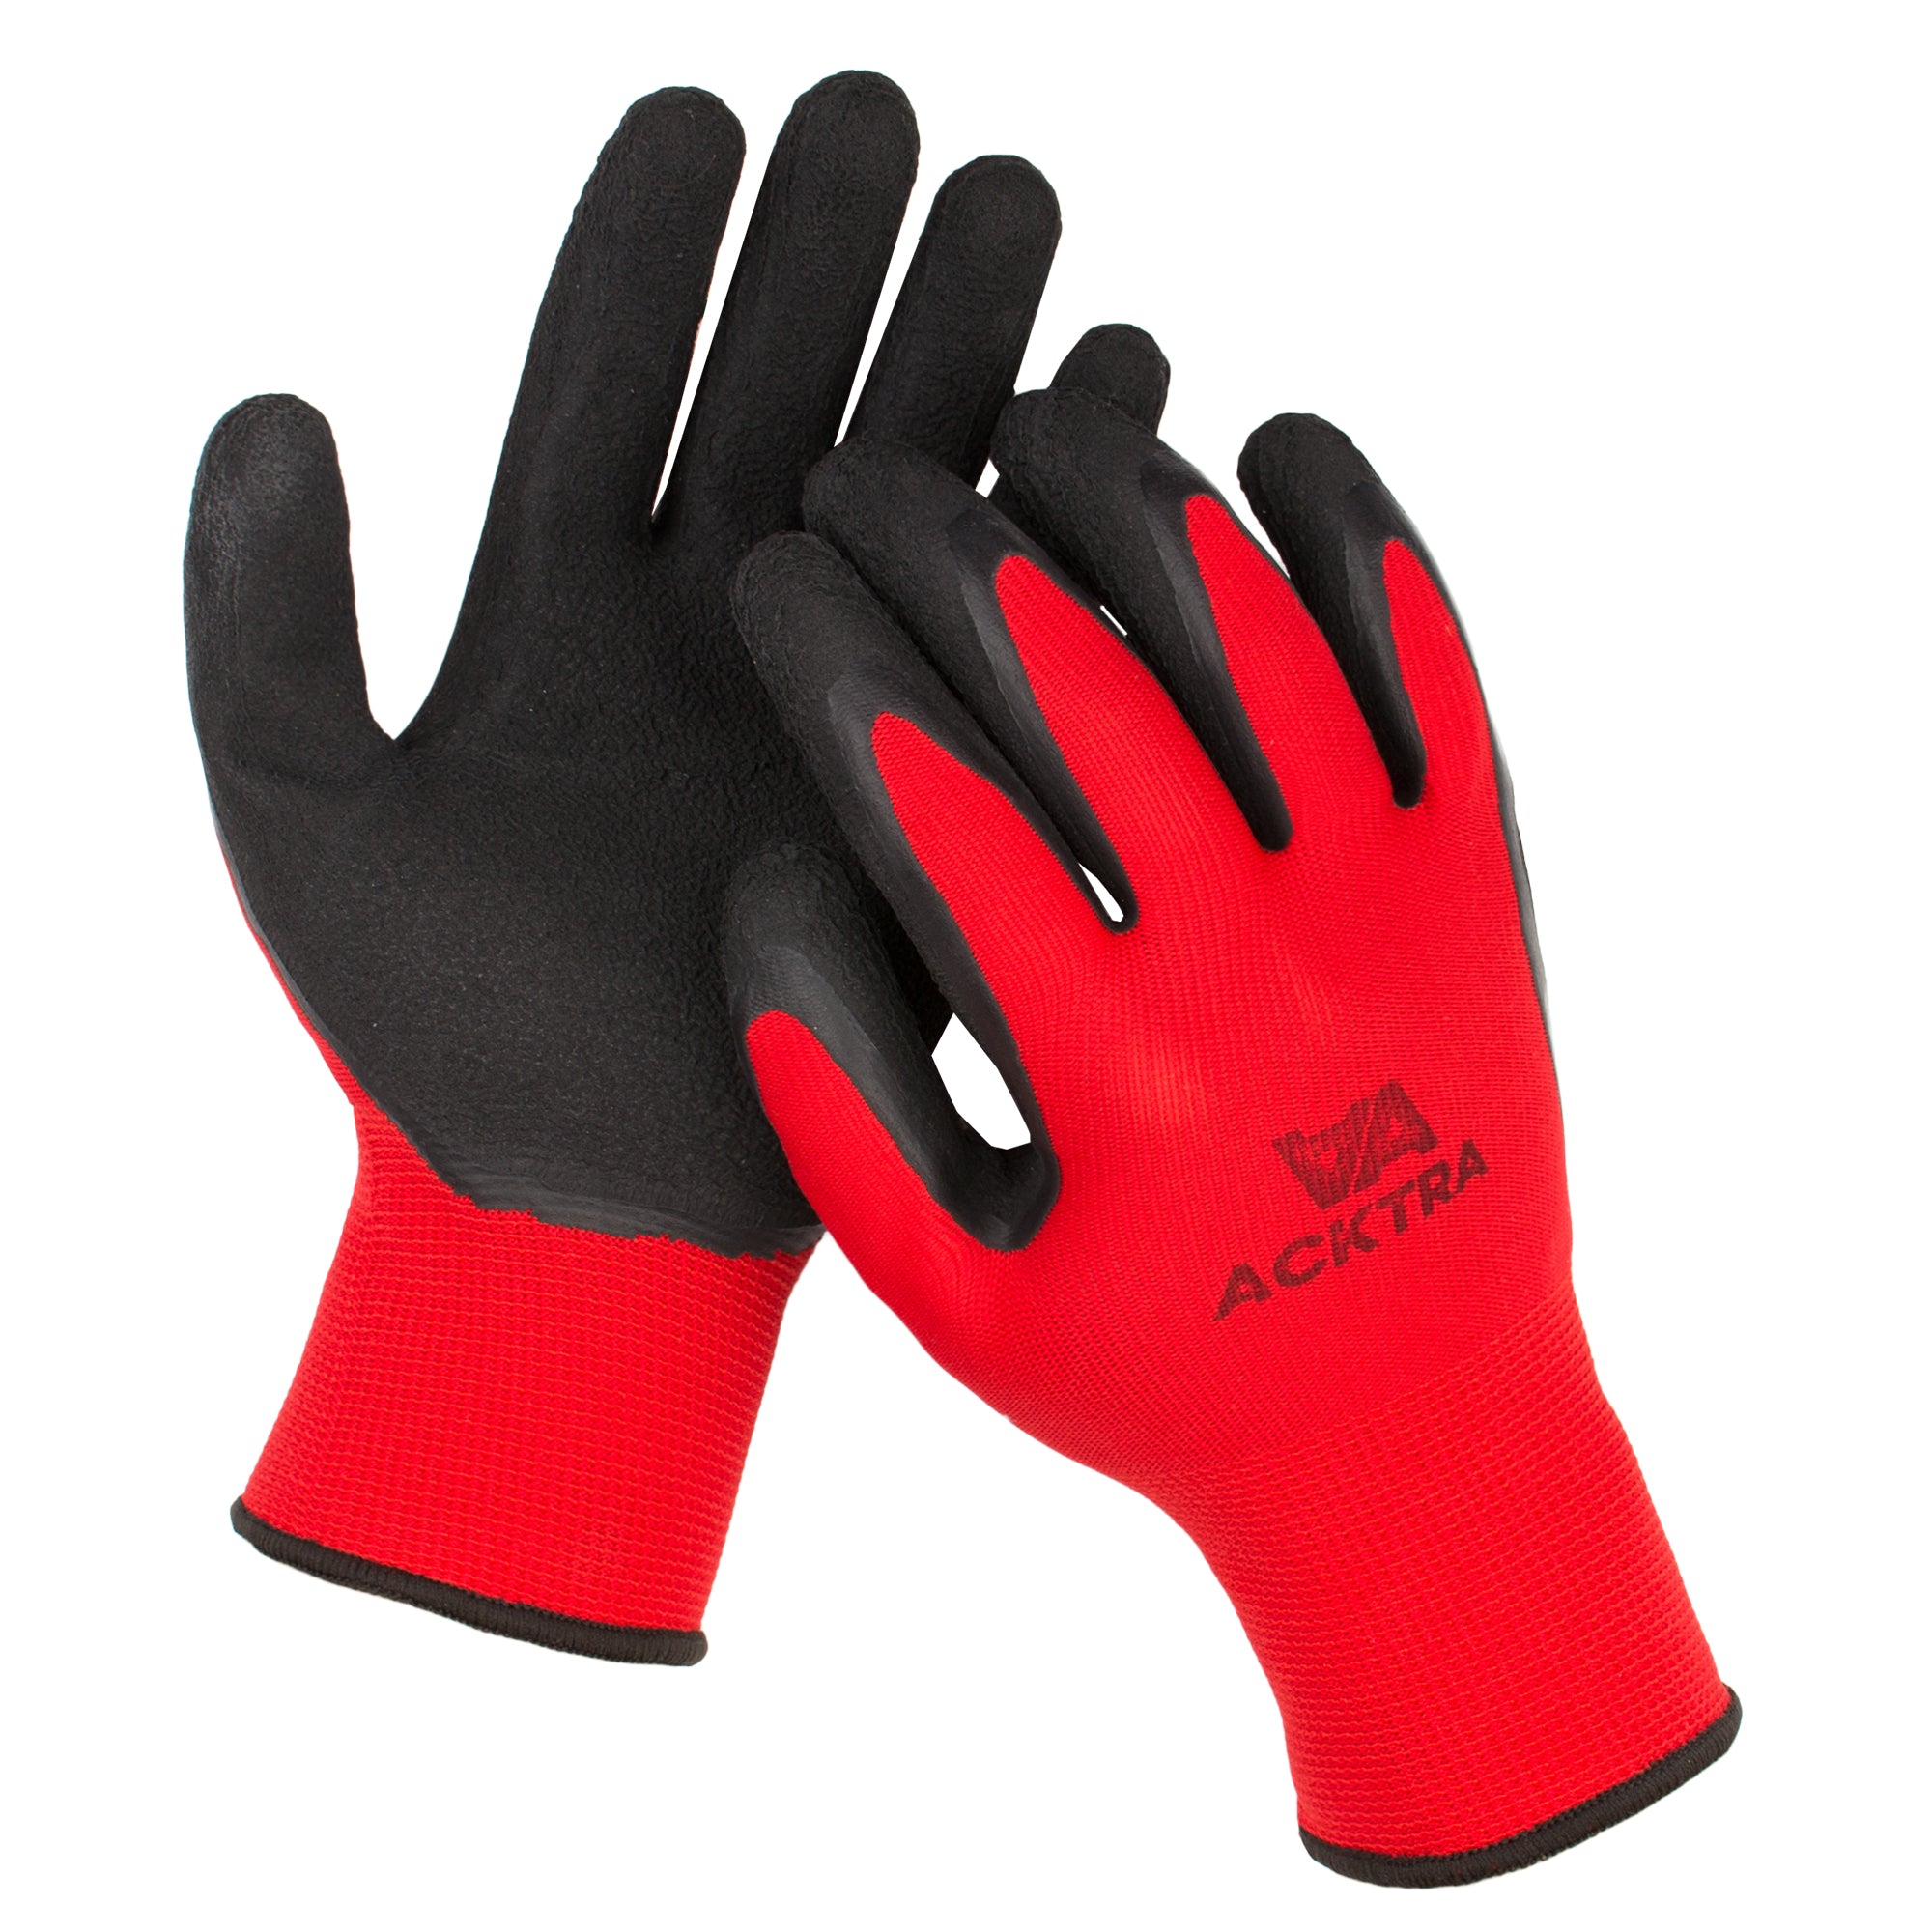 ACKTRA Premium Coated Nylon Safety WORK GLOVES, Knit Wrist Cuff